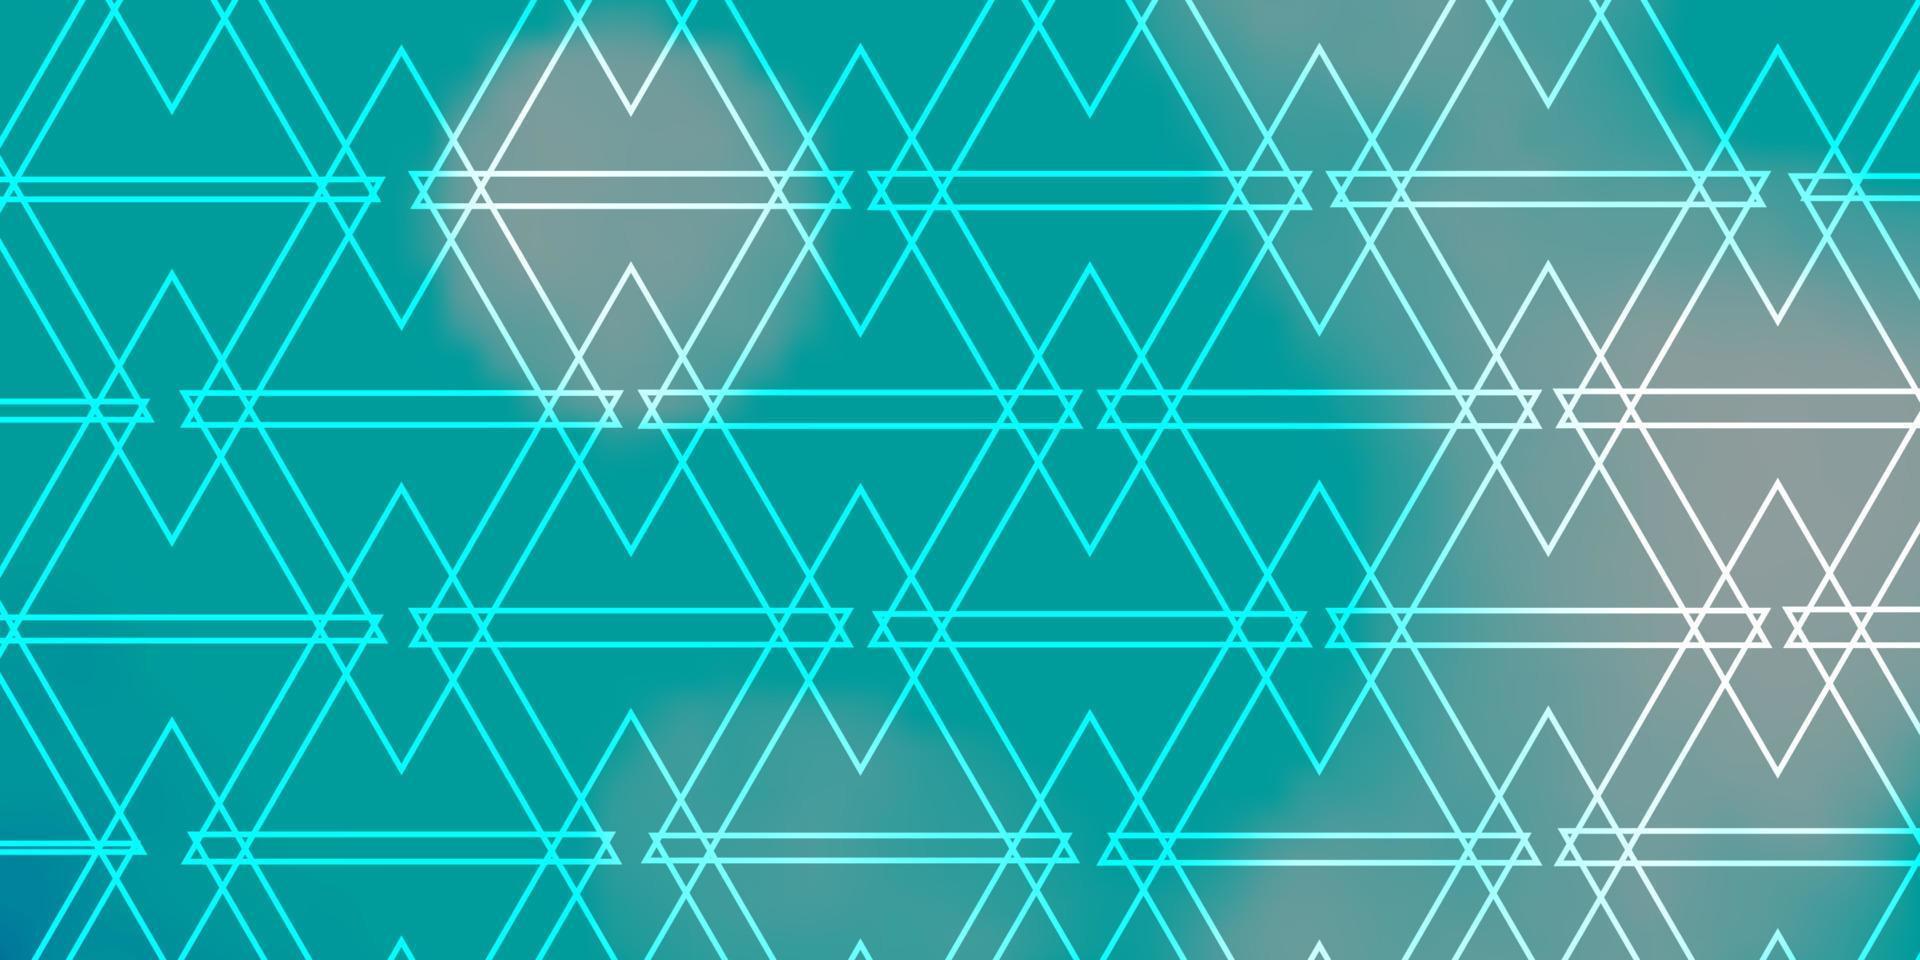 hellblauer, grüner Vektorhintergrund mit Linien, Dreiecken. vektor